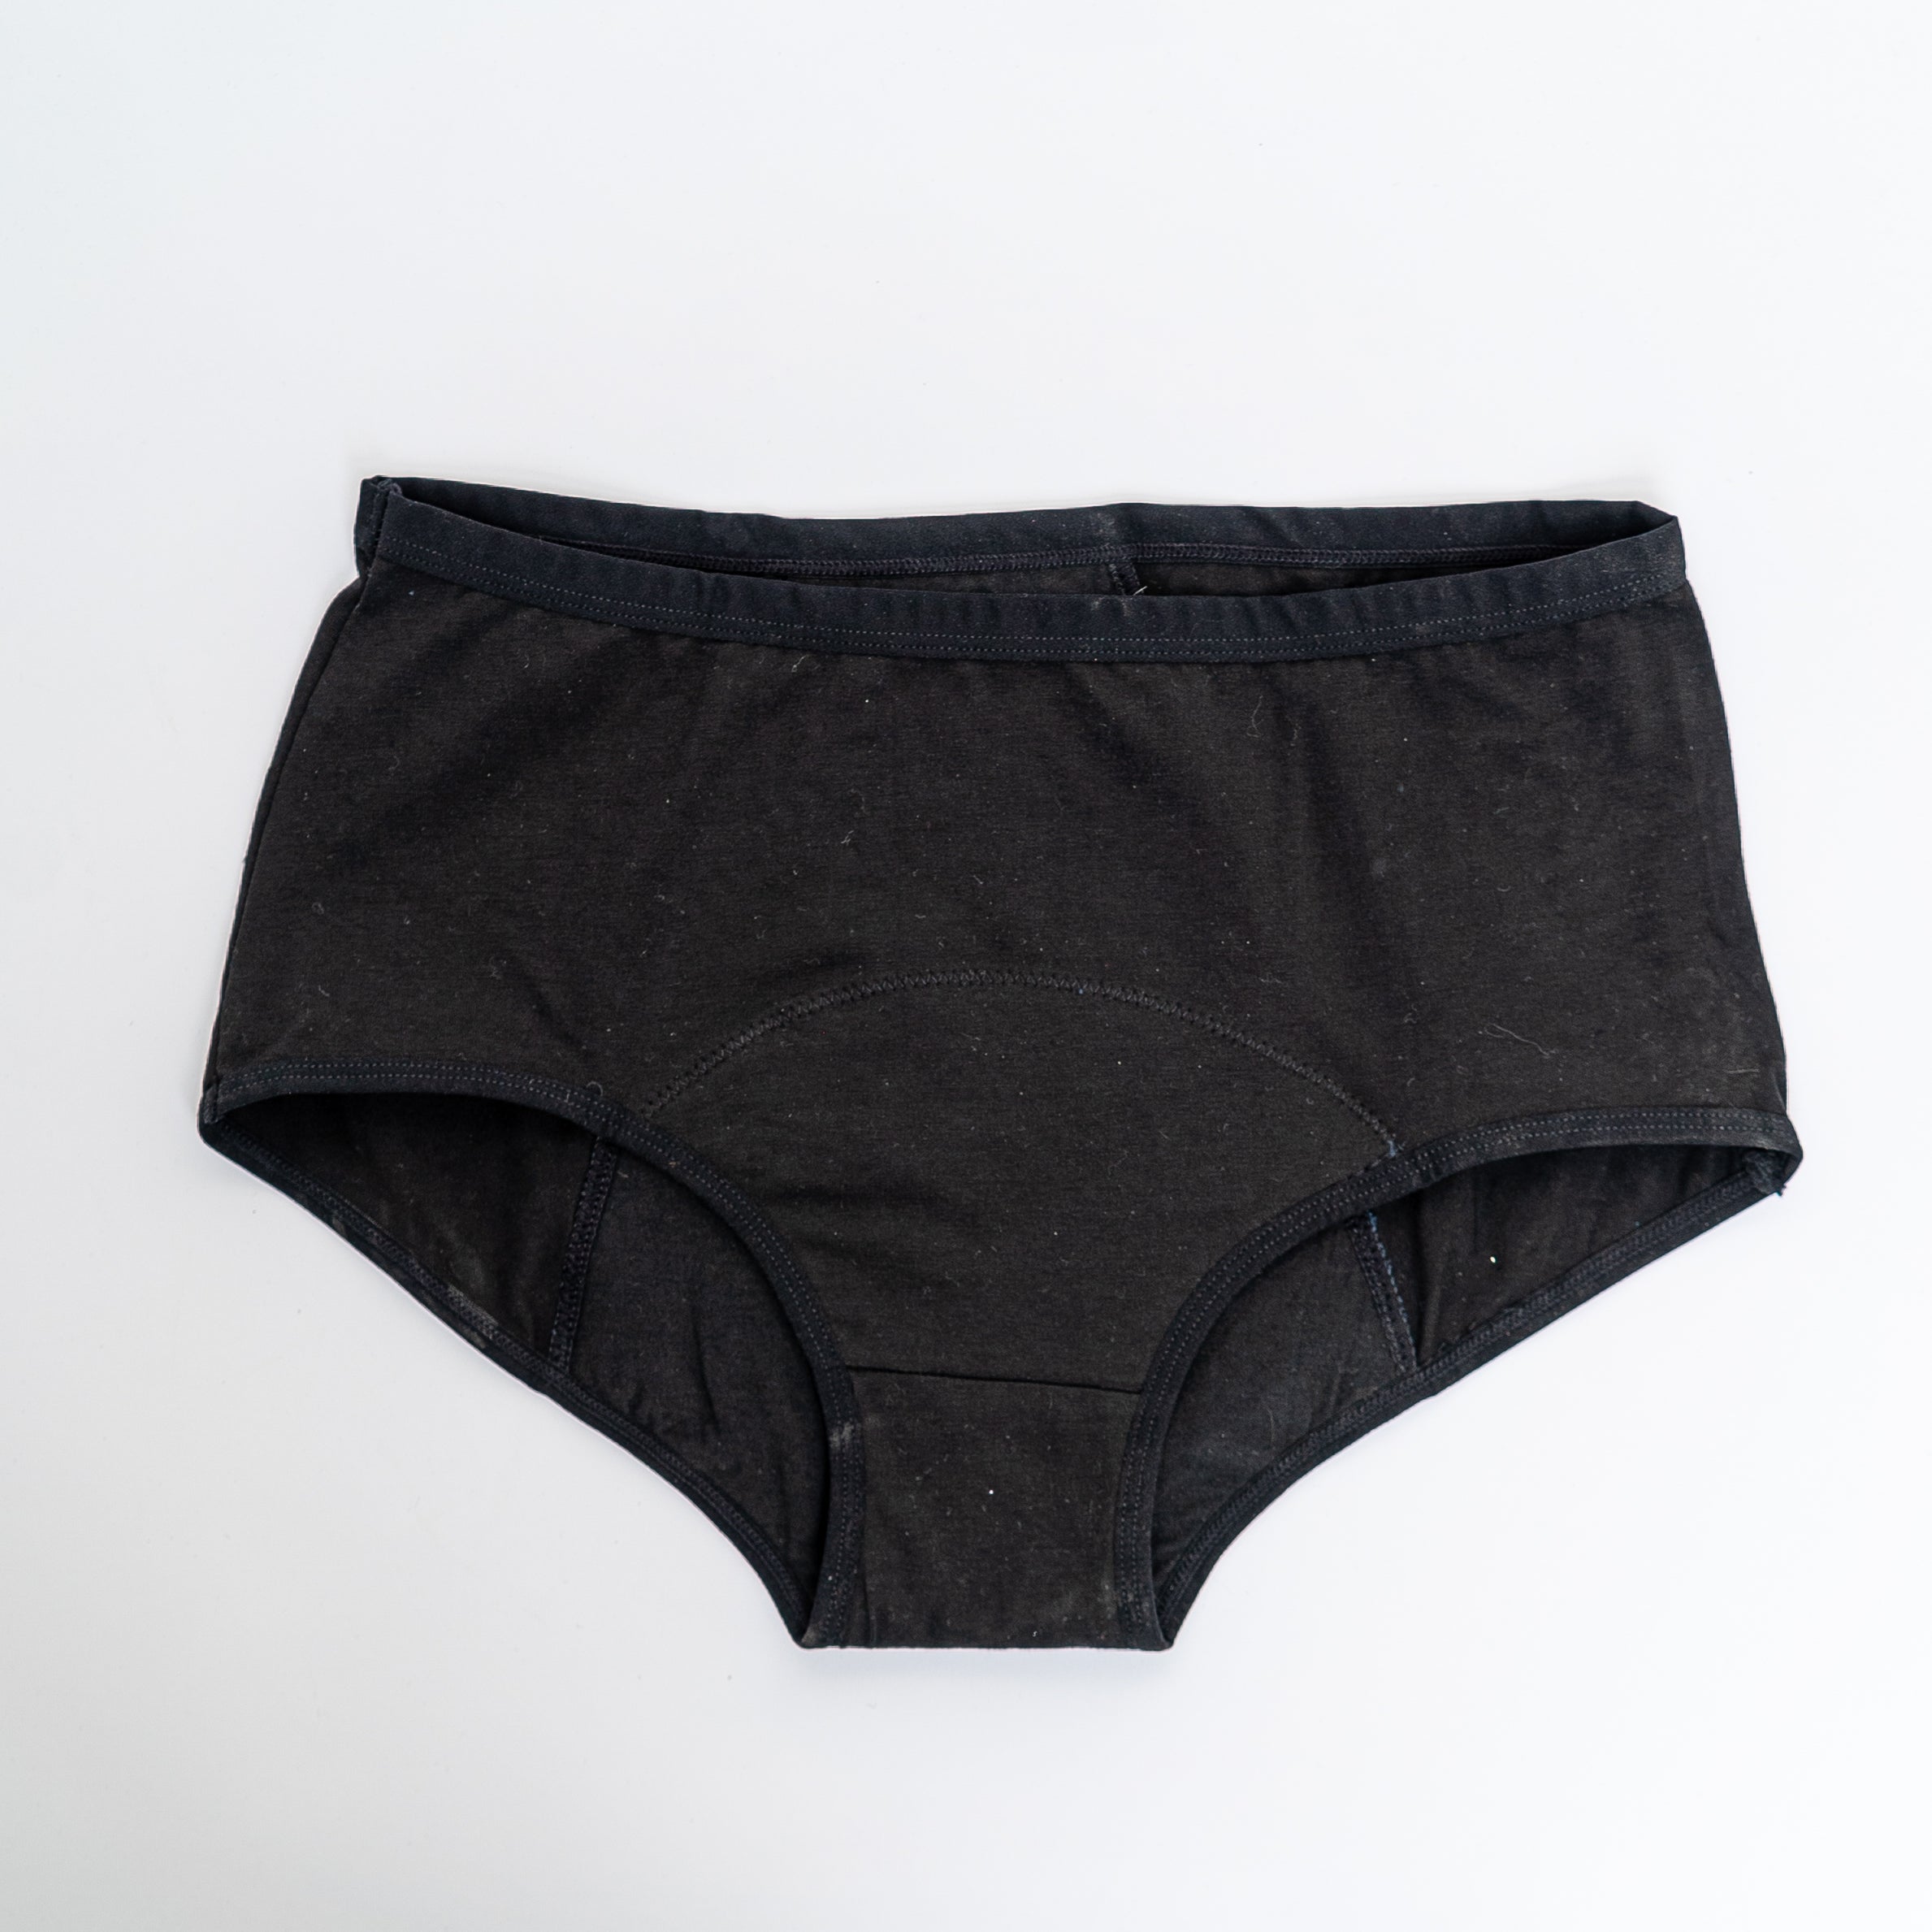 Orgaknix Period Underwear in Starter Pack